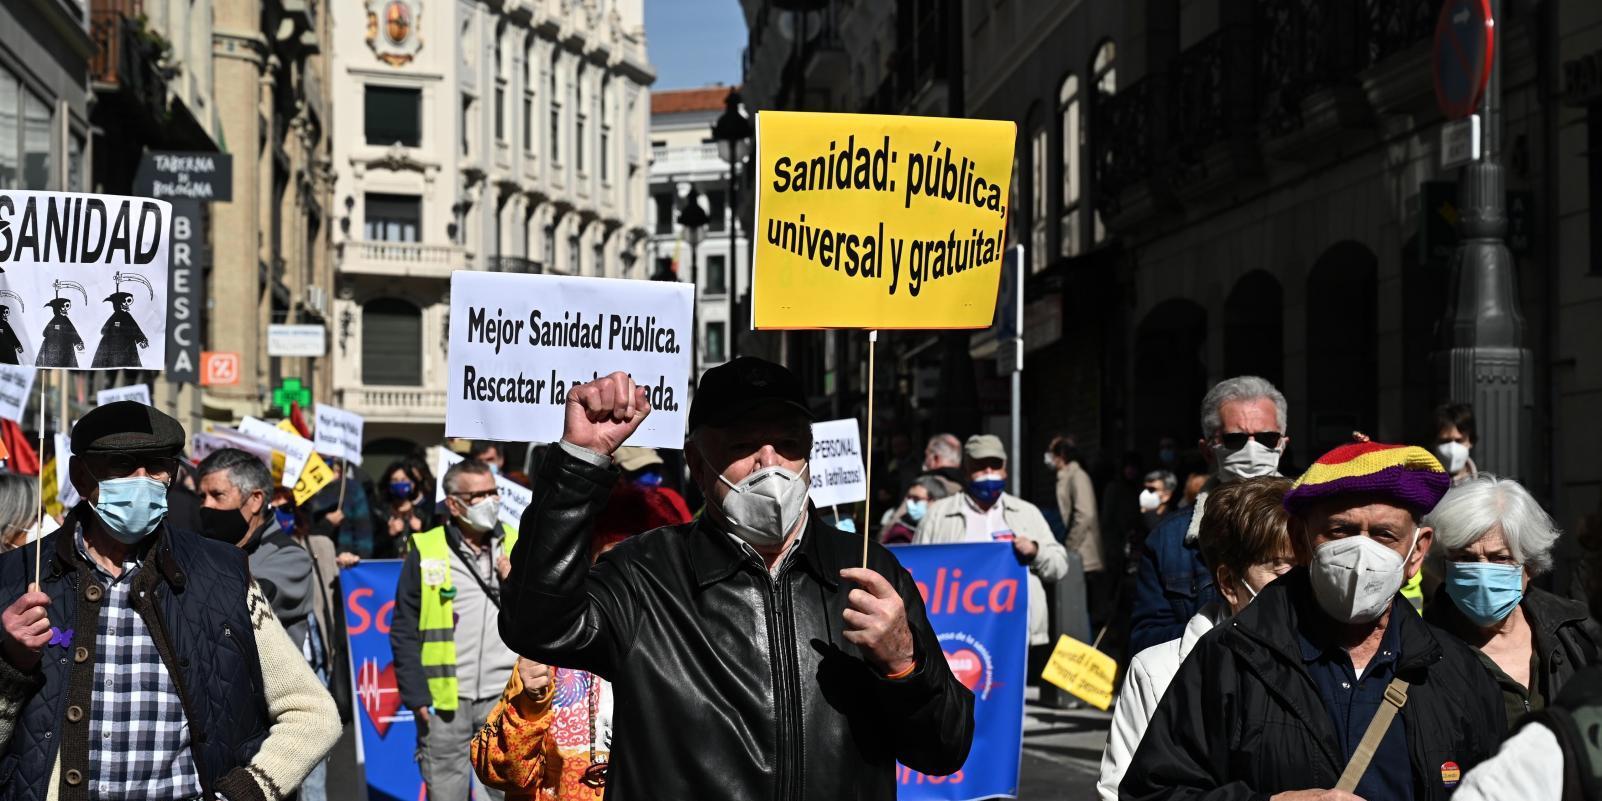 Unas 200 personas protestan contra la privatización sanitaria en Madrid